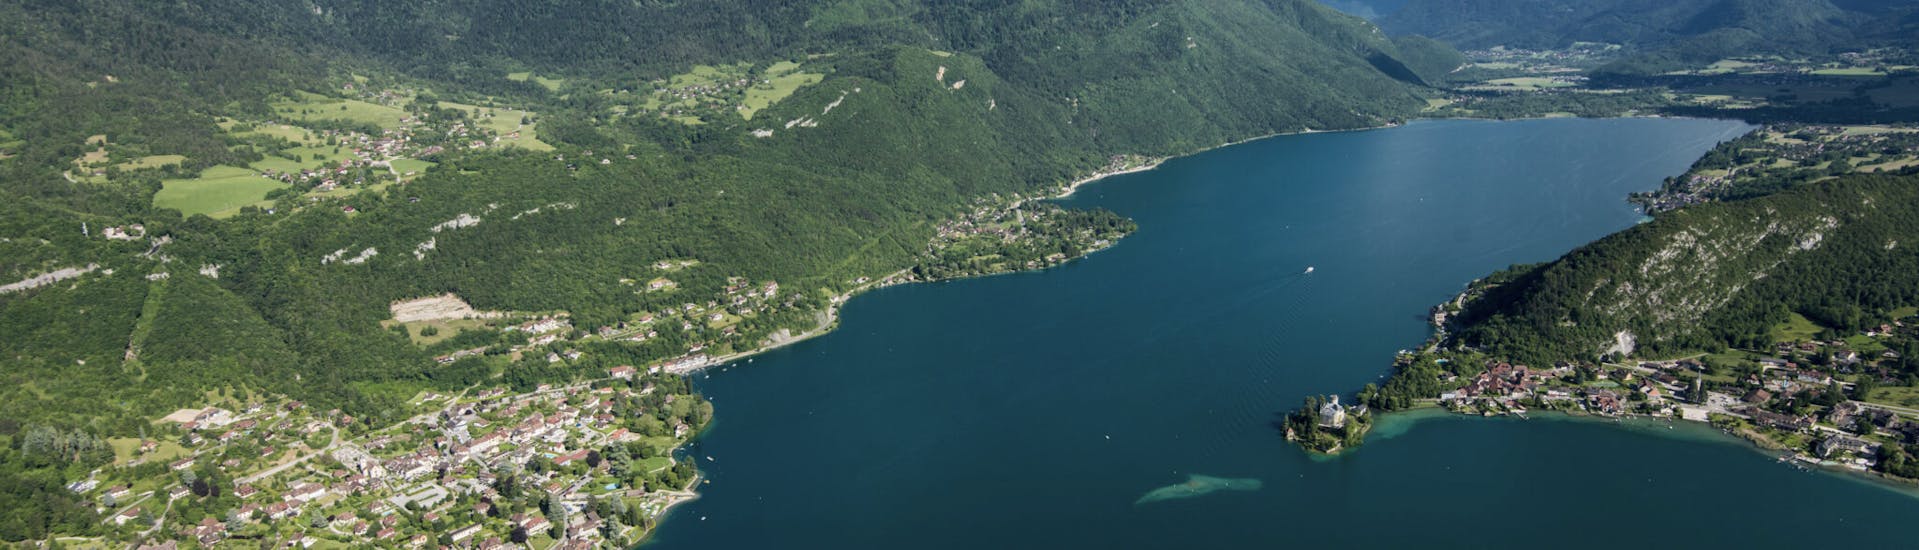 Vista del lago donde se puede ir durante el alquiler de bicicletas de montaña alrededor del lago de Annecy.